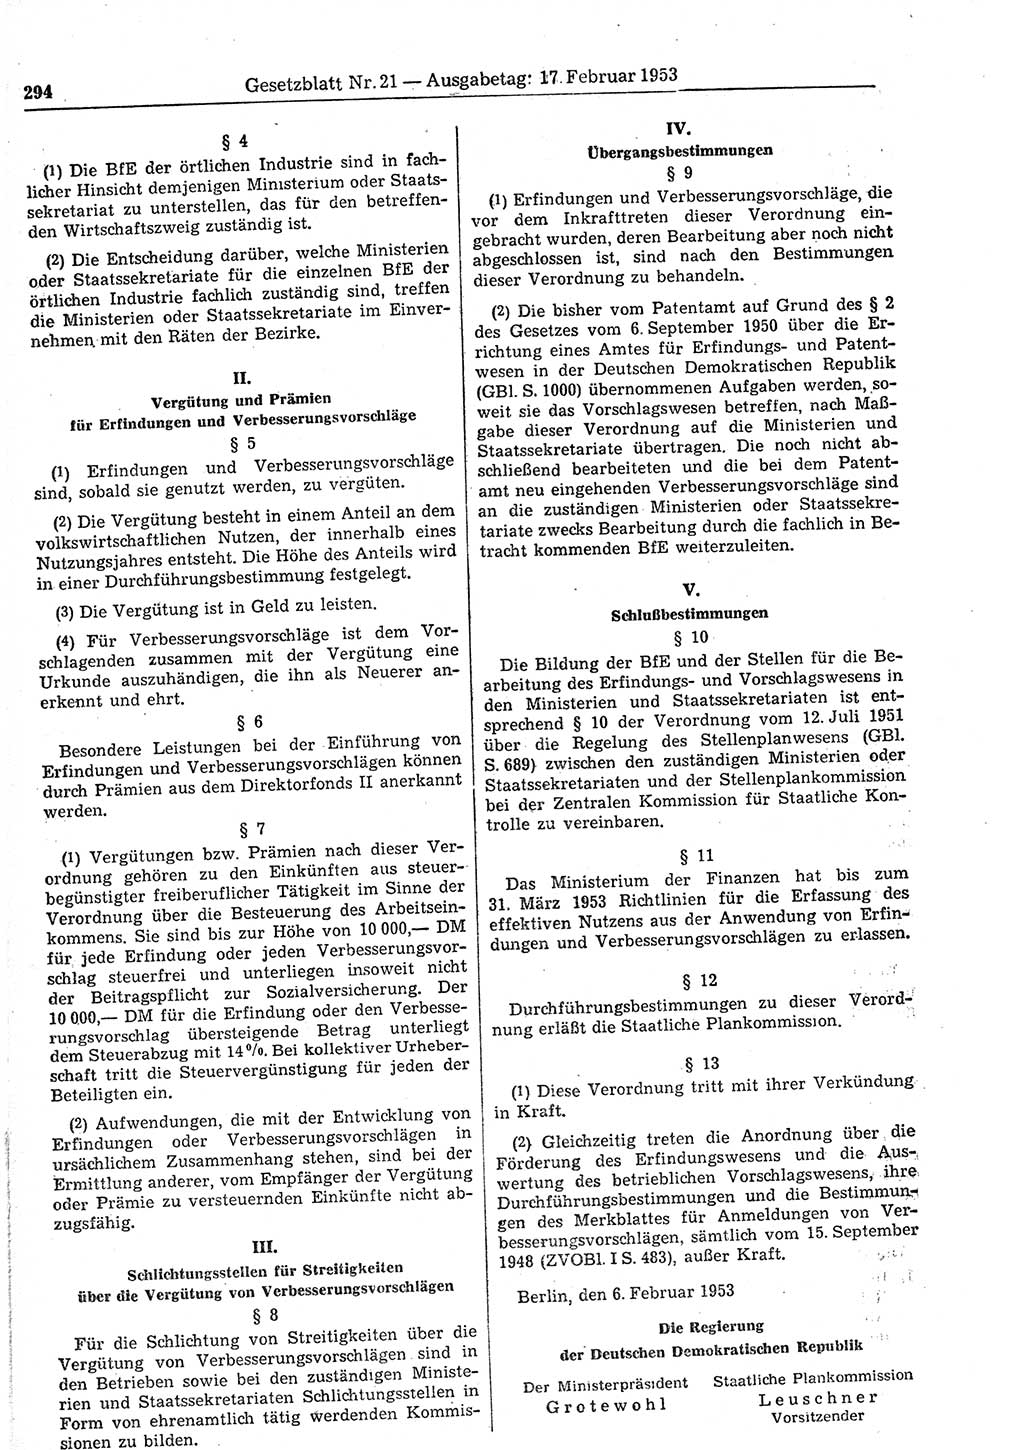 Gesetzblatt (GBl.) der Deutschen Demokratischen Republik (DDR) 1953, Seite 294 (GBl. DDR 1953, S. 294)